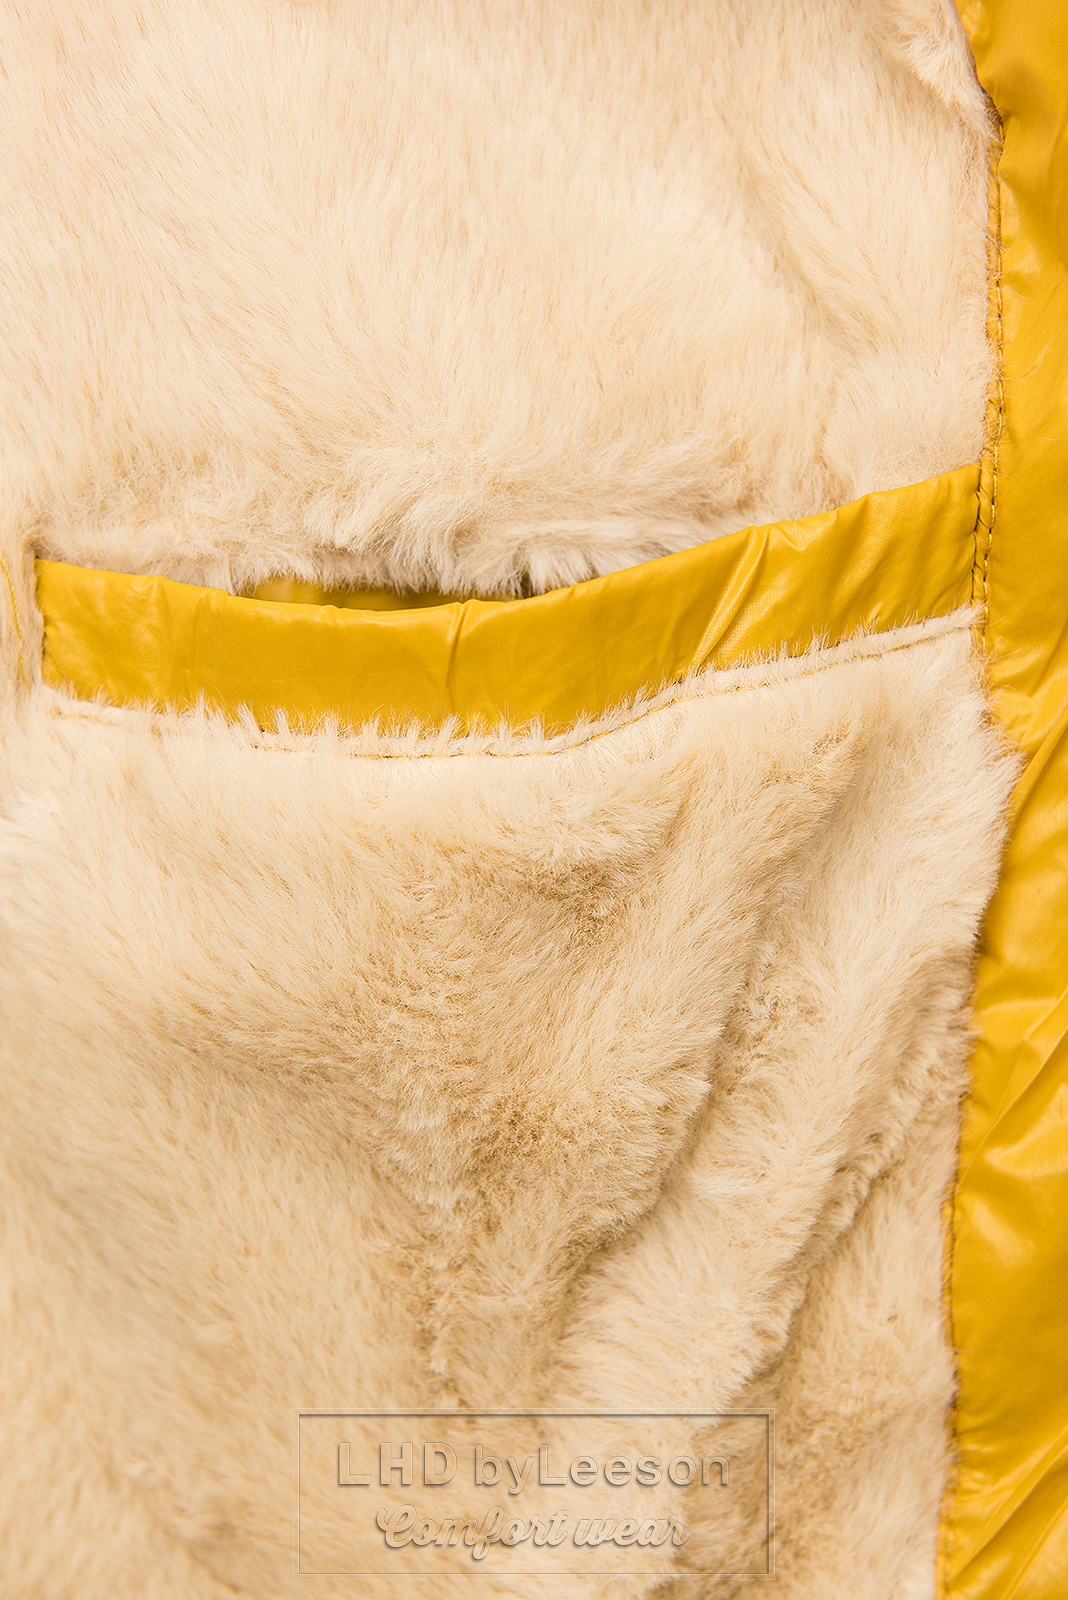 Żółta błyszcząca kurtka zimowa z paskiem